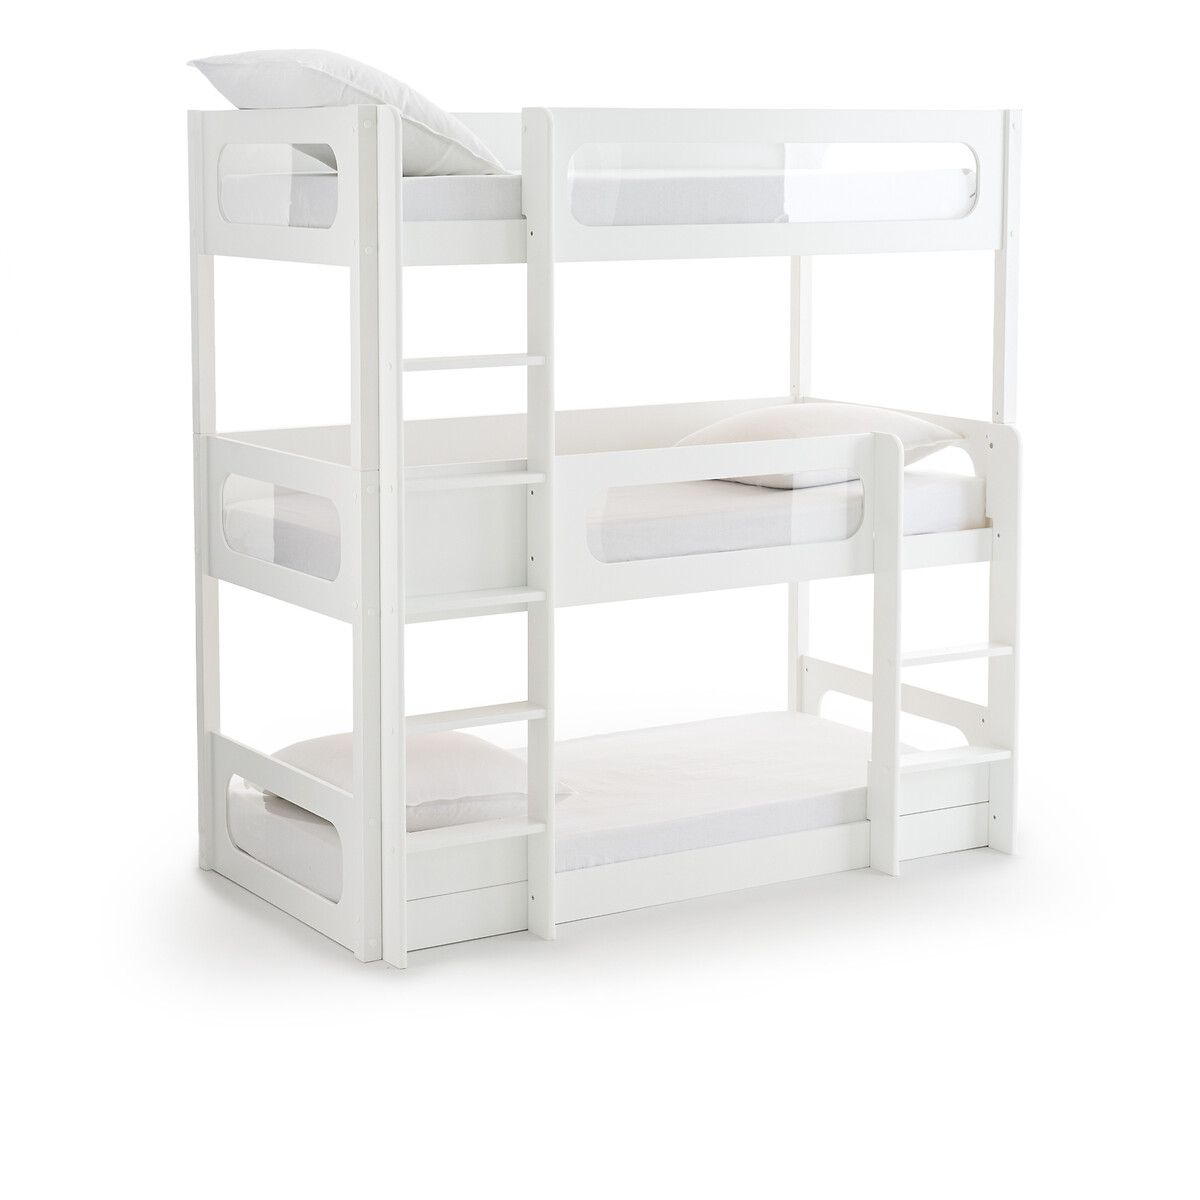 Кровать Трехъярусная с тремя кроватными основаниями Pilha 90 x 190 см белый LaRedoute, размер 90 x 190 см